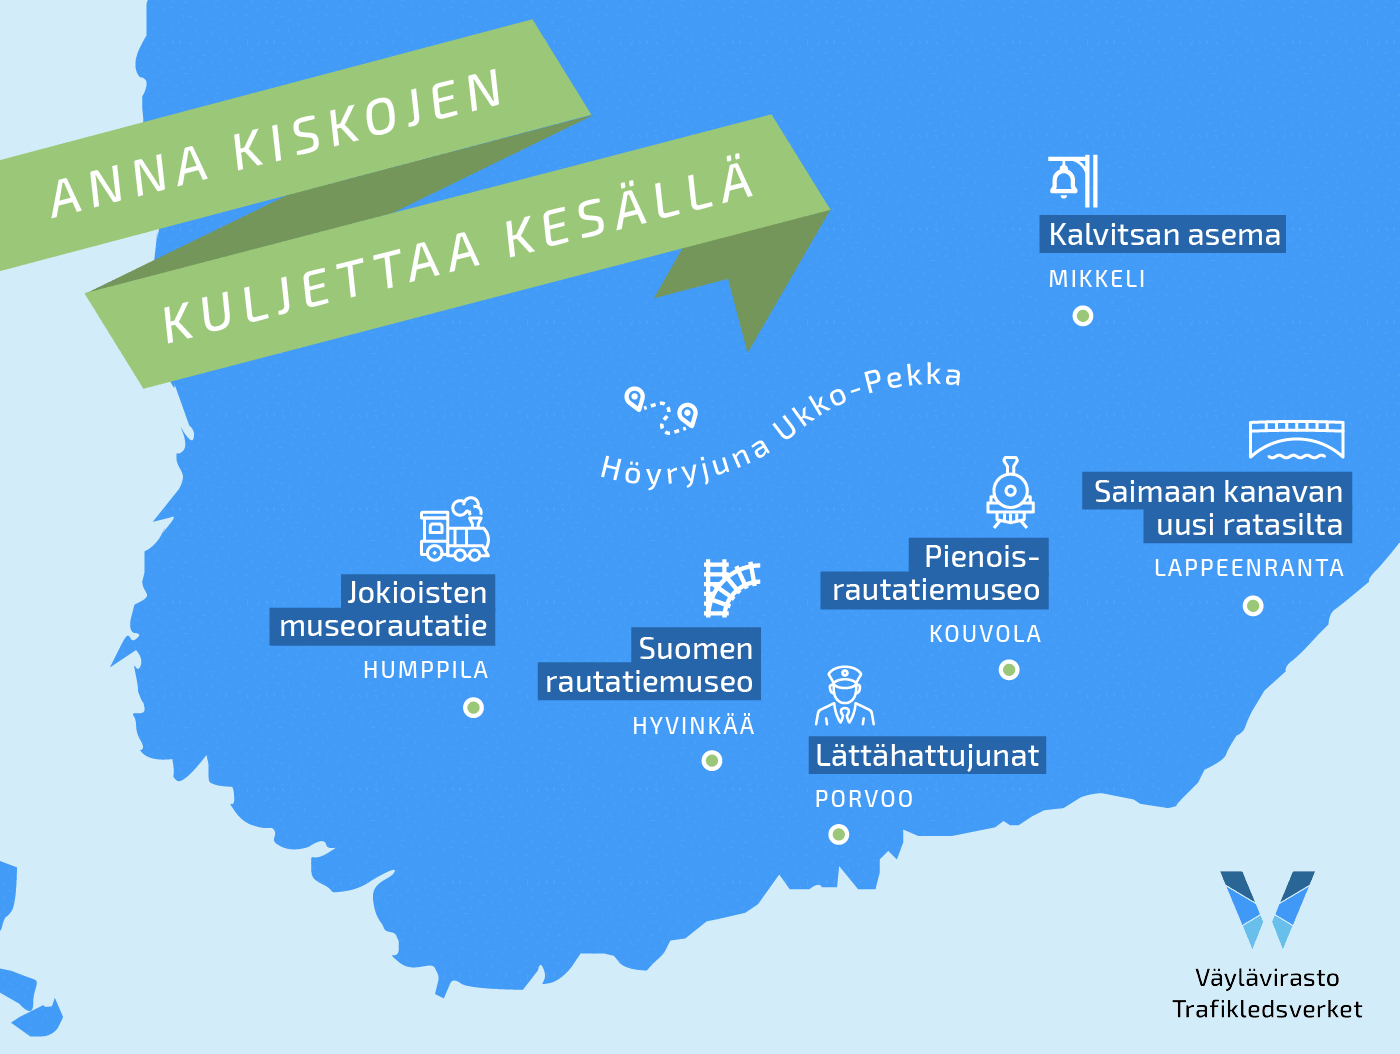 Anna kiskojen kuljettaa kesällä - Finnish Transport Infrastructure Agency